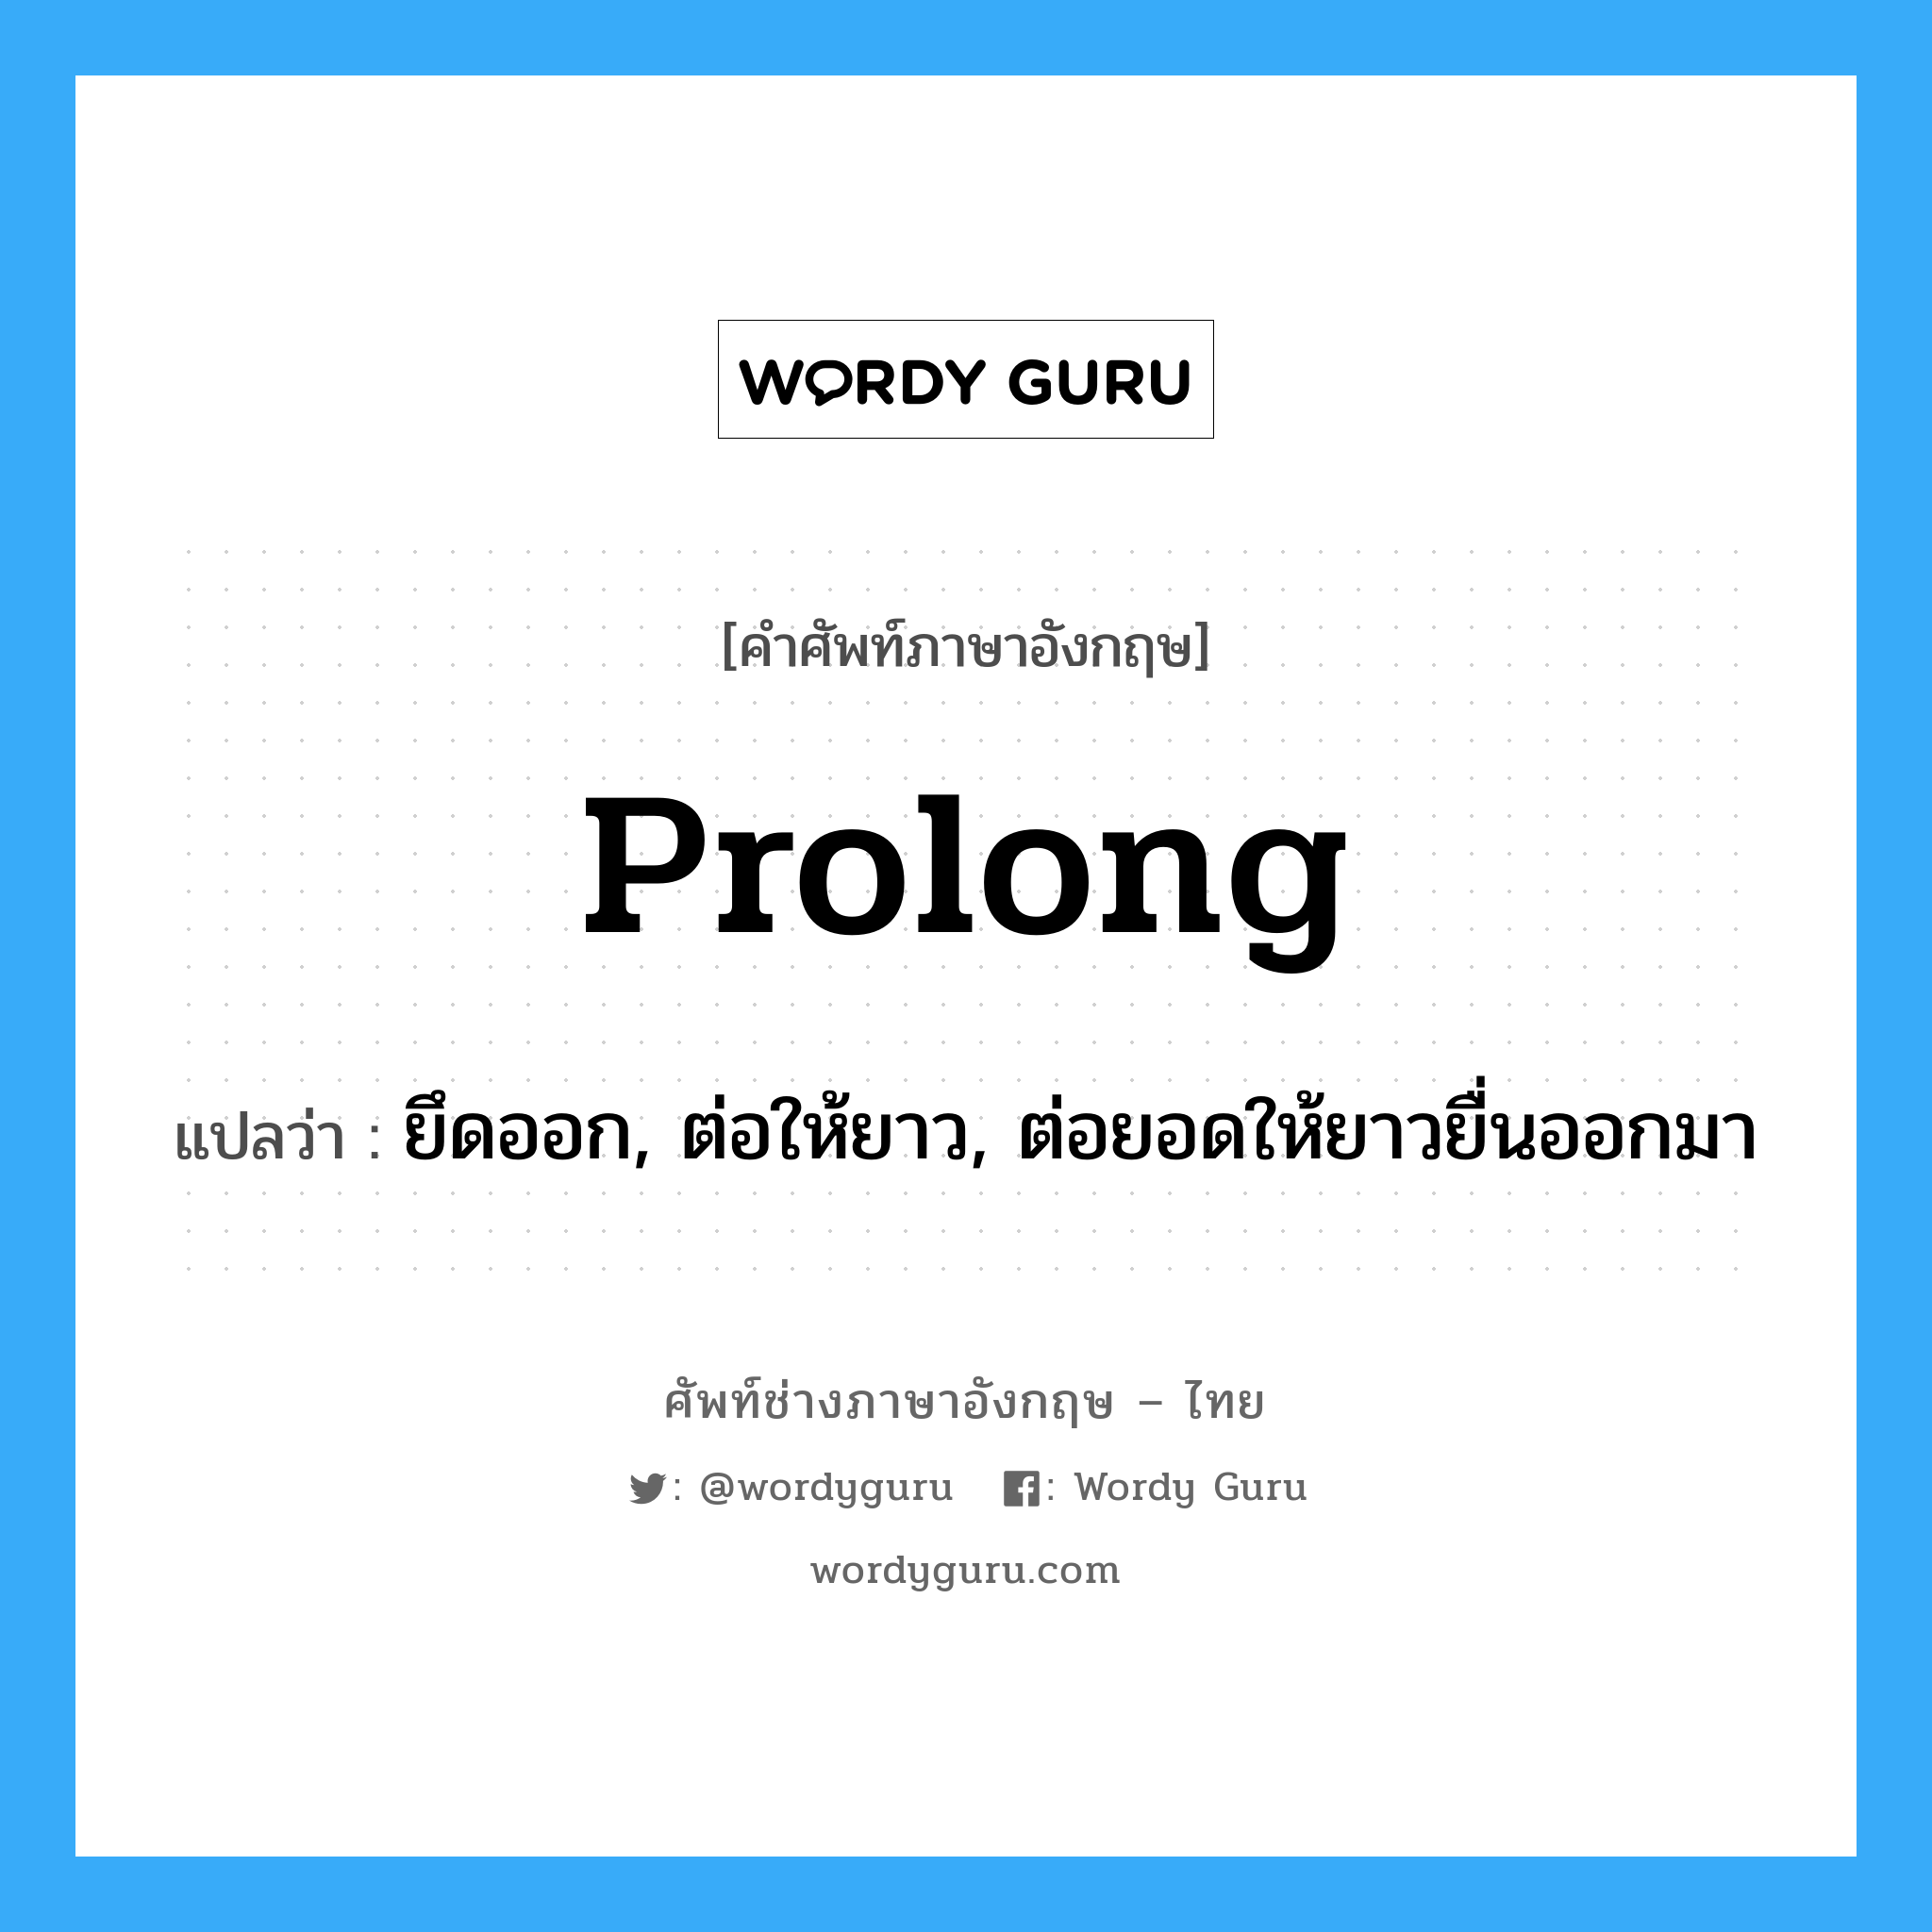 prolong แปลว่า?, คำศัพท์ช่างภาษาอังกฤษ - ไทย prolong คำศัพท์ภาษาอังกฤษ prolong แปลว่า ยึดออก, ต่อให้ยาว, ต่อยอดให้ยาวยื่นออกมา